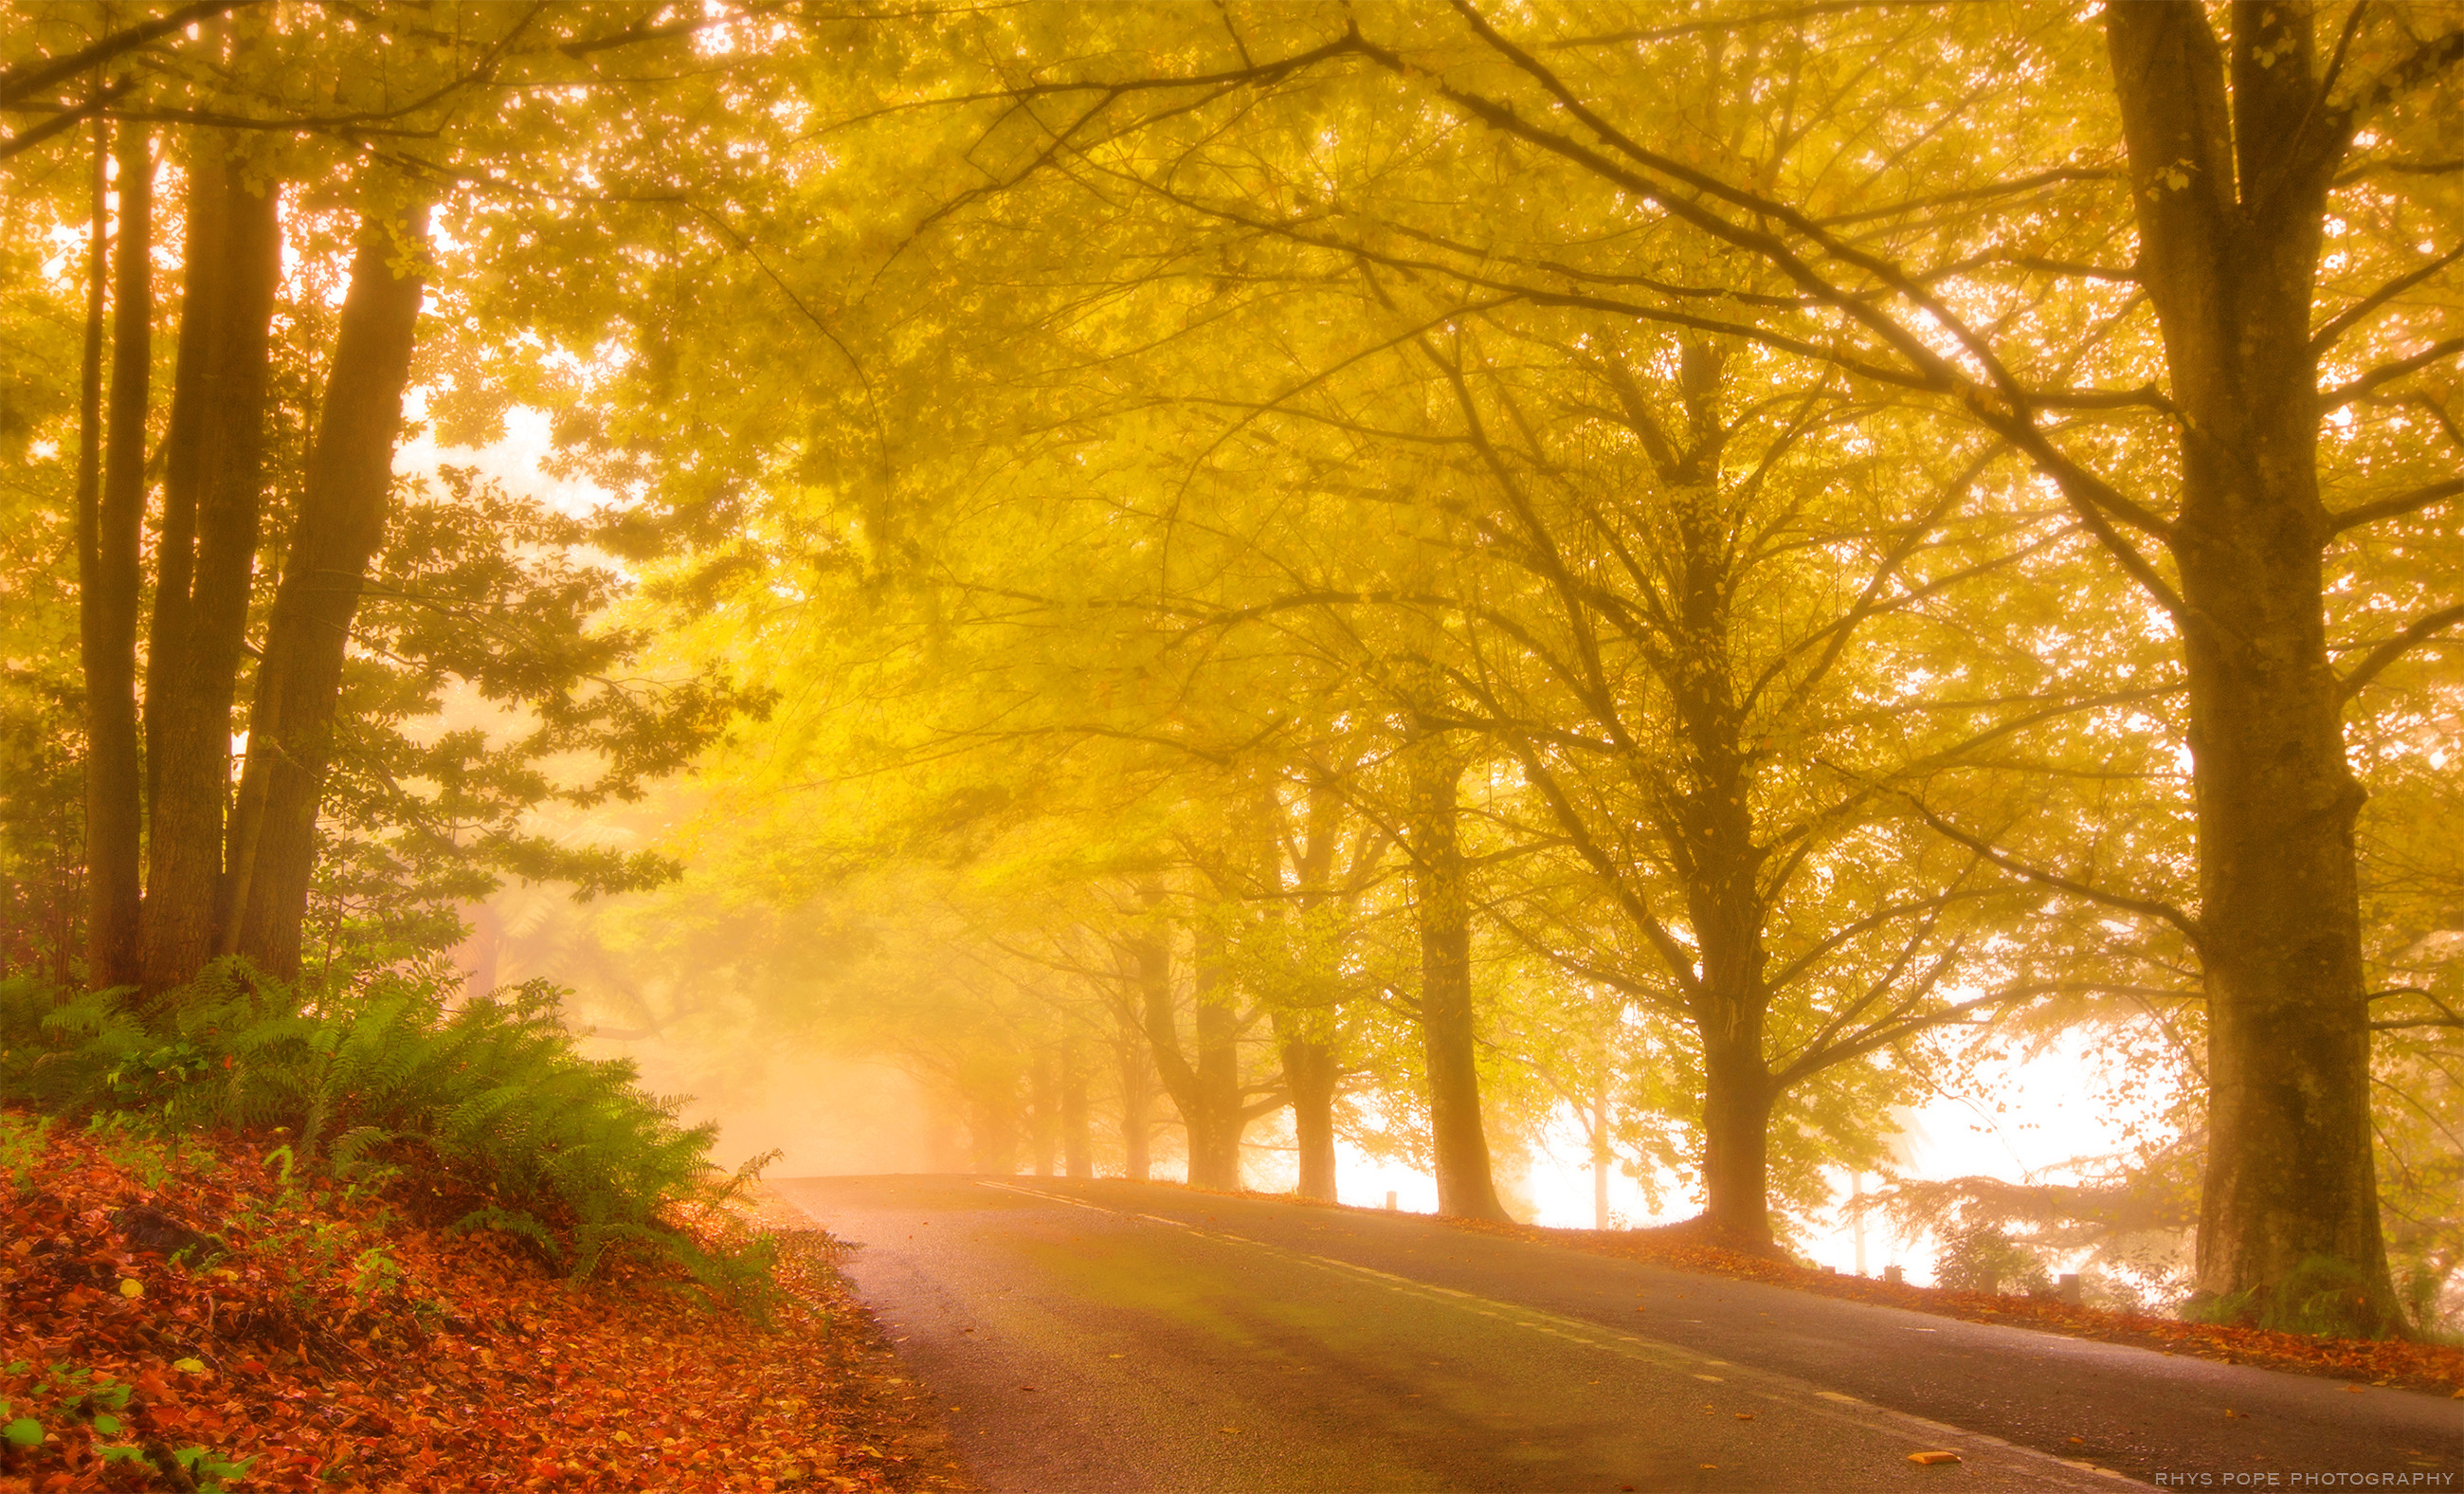 Скачать обои бесплатно Осень, Дорога, Лес, Дерево, Туман, Земля/природа картинка на рабочий стол ПК